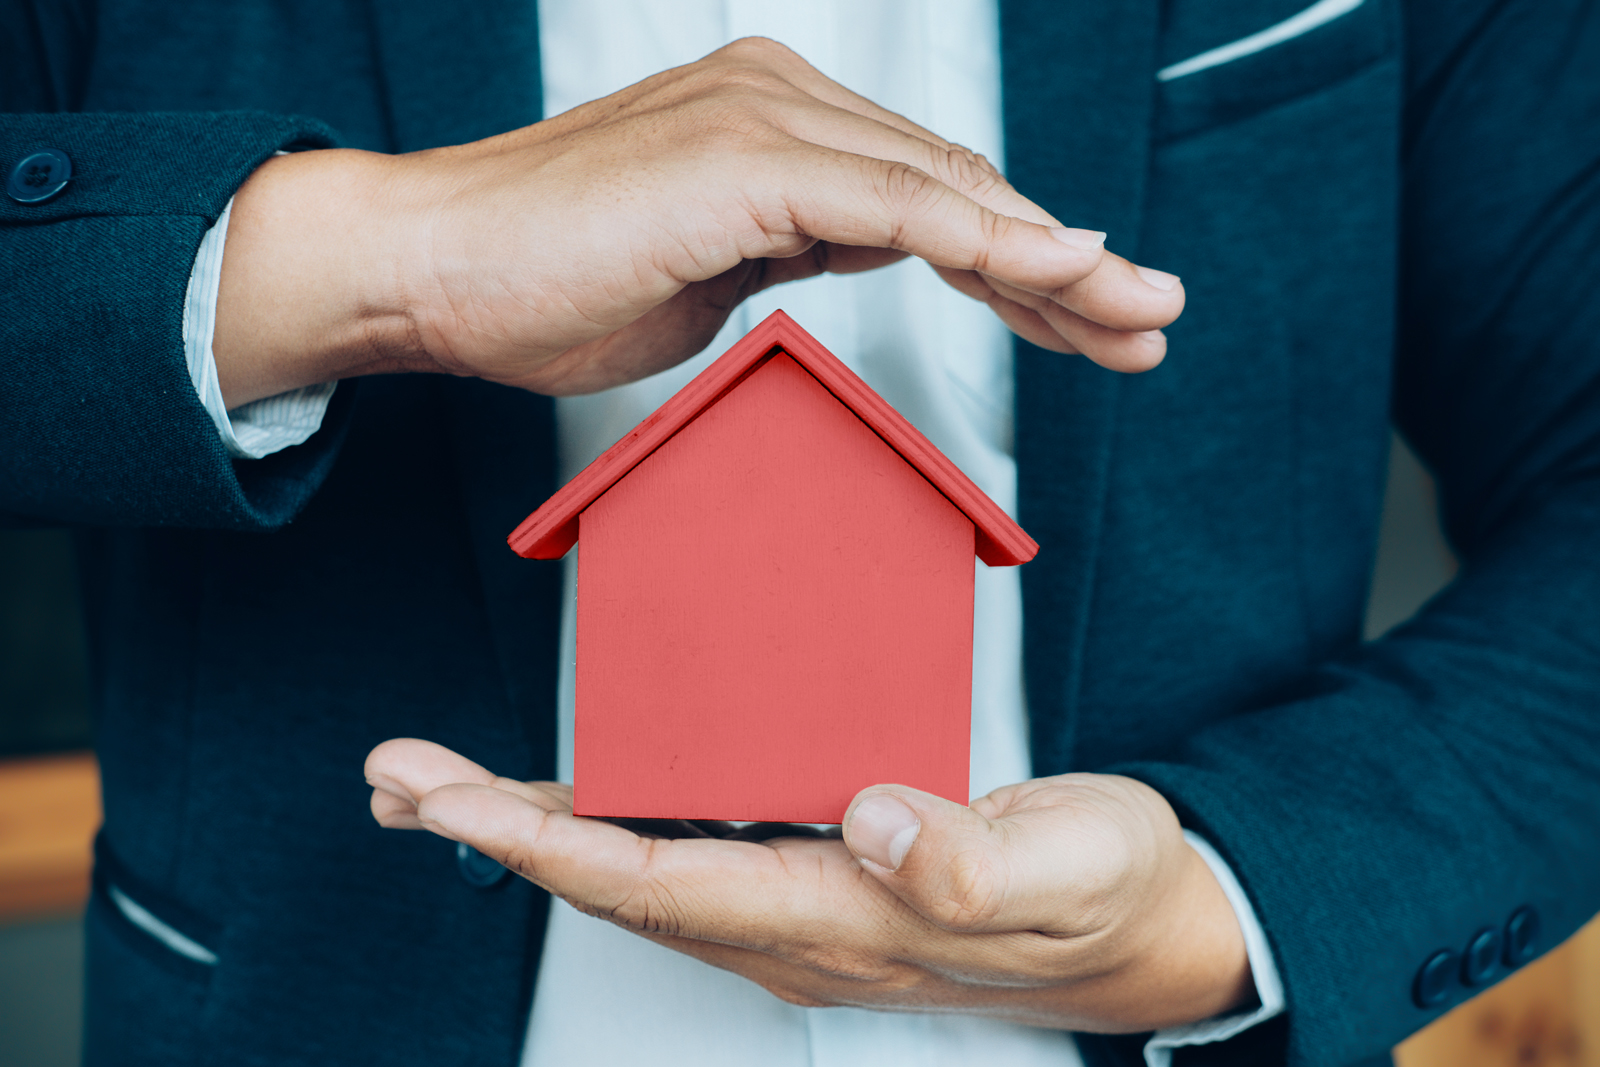 Reial decret llei 21/2018, de 14 de desembre, de mesures urgents en matèria d’habitatge i lloguer